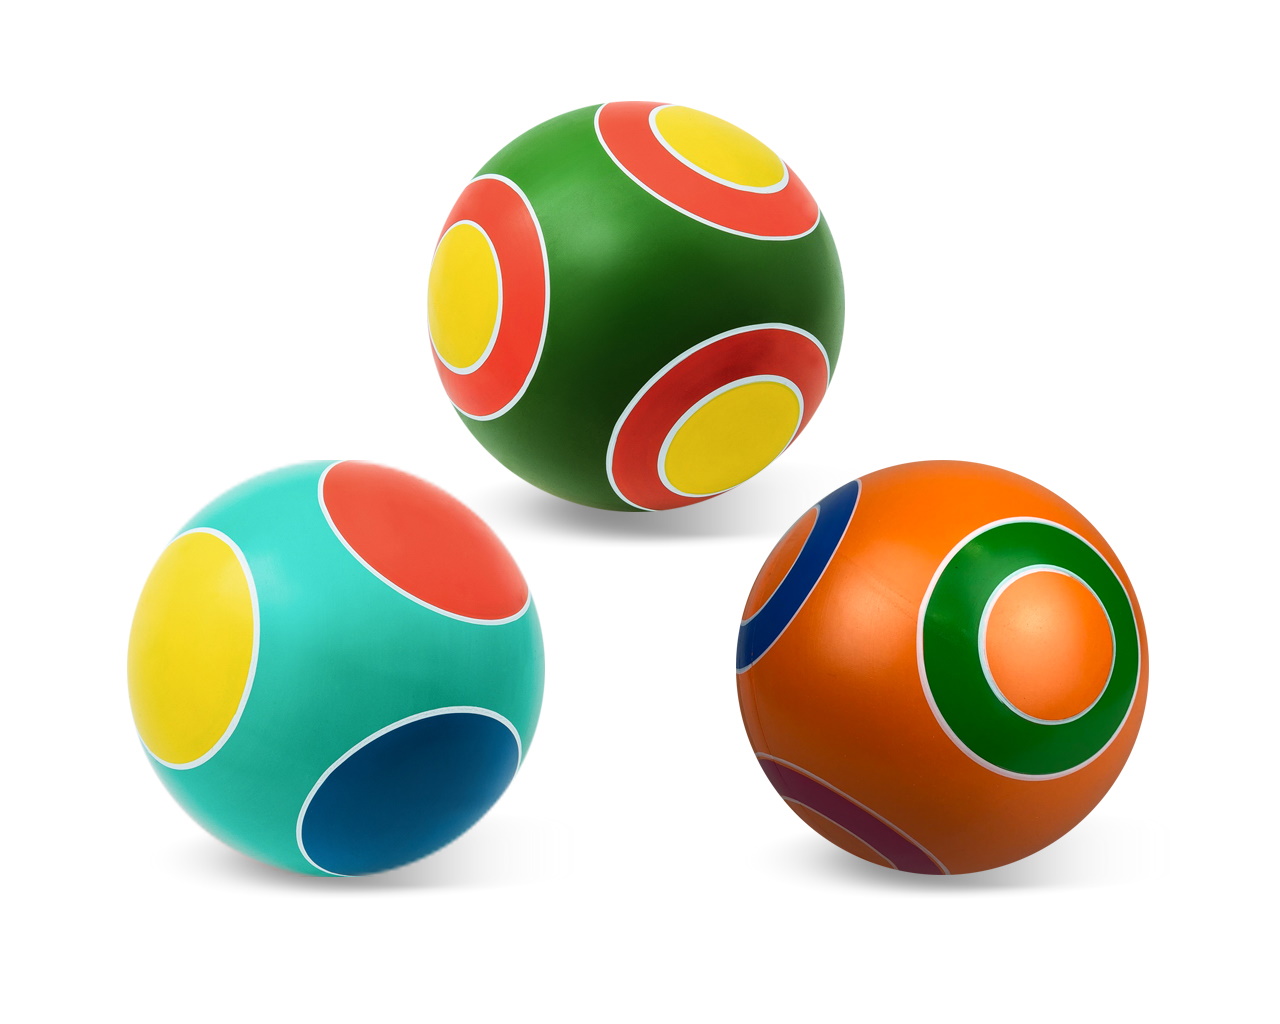 Мяч резиновый диаметр 125 мм., серия Кружочки, Чебоксары, Р3-125 